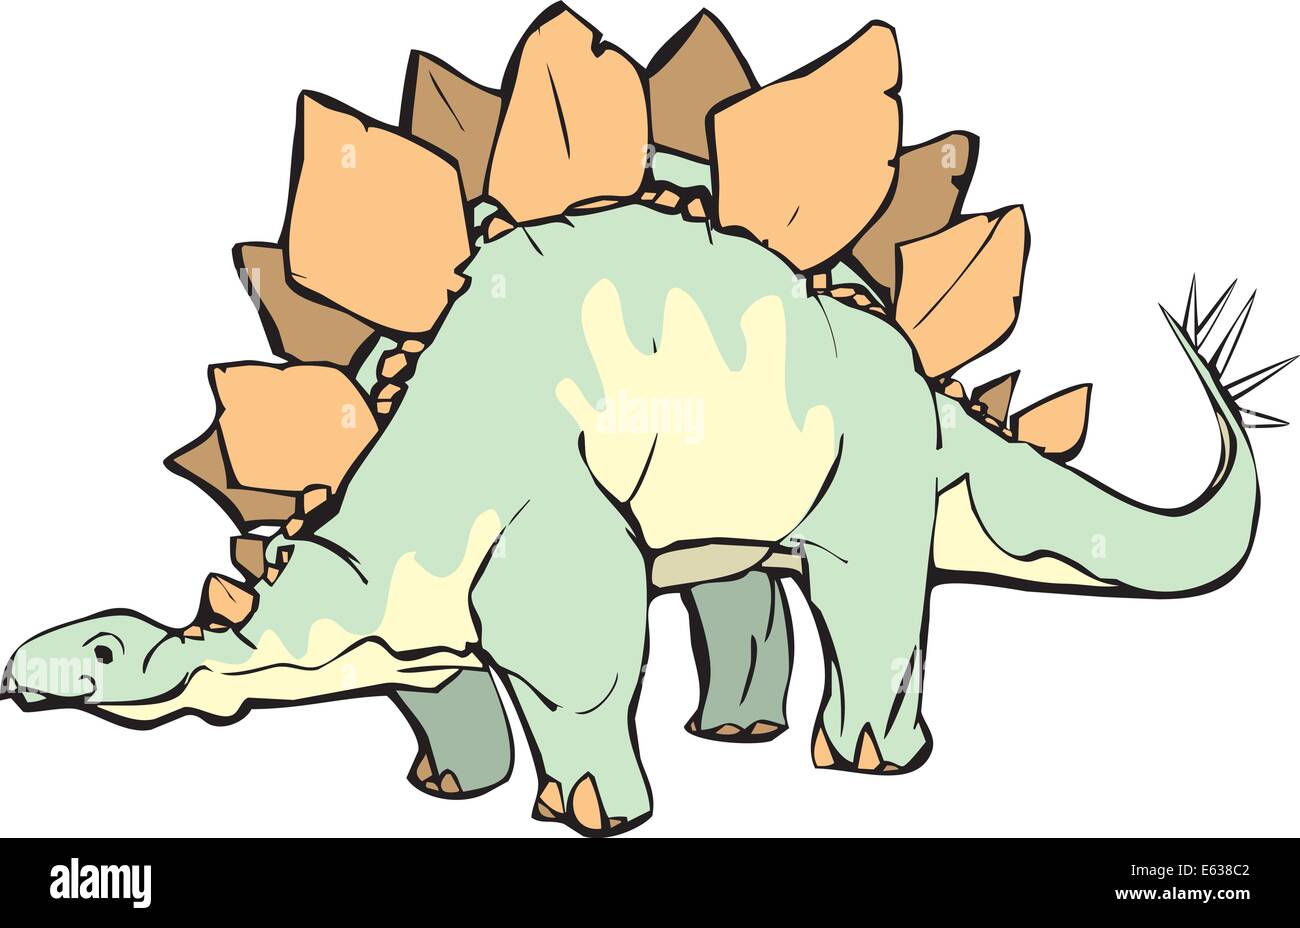 Stegosaurus mit einem angenehmen Ausdruck und gelbe Musterung. Stock Vektor